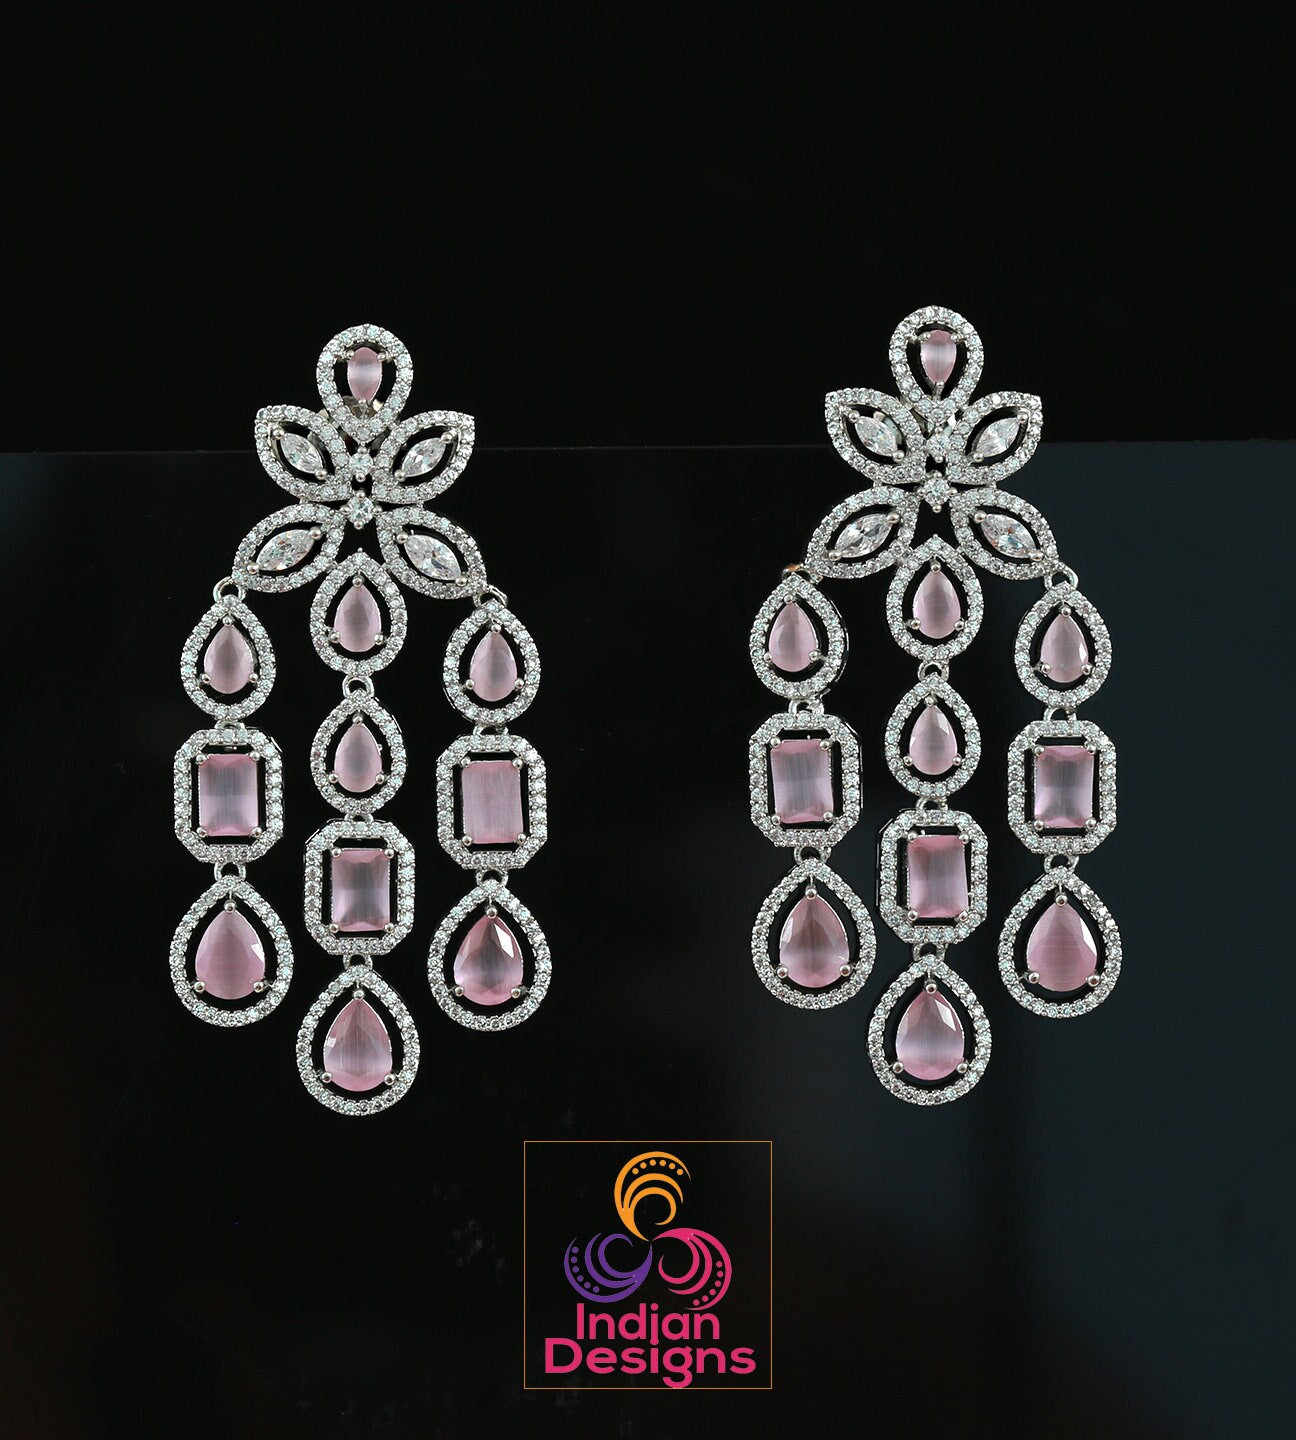 Multi Strand Dangle drop Earrings | American diamond earrings in silver | Bollywood earrings for wedding | Bridal earrings drop